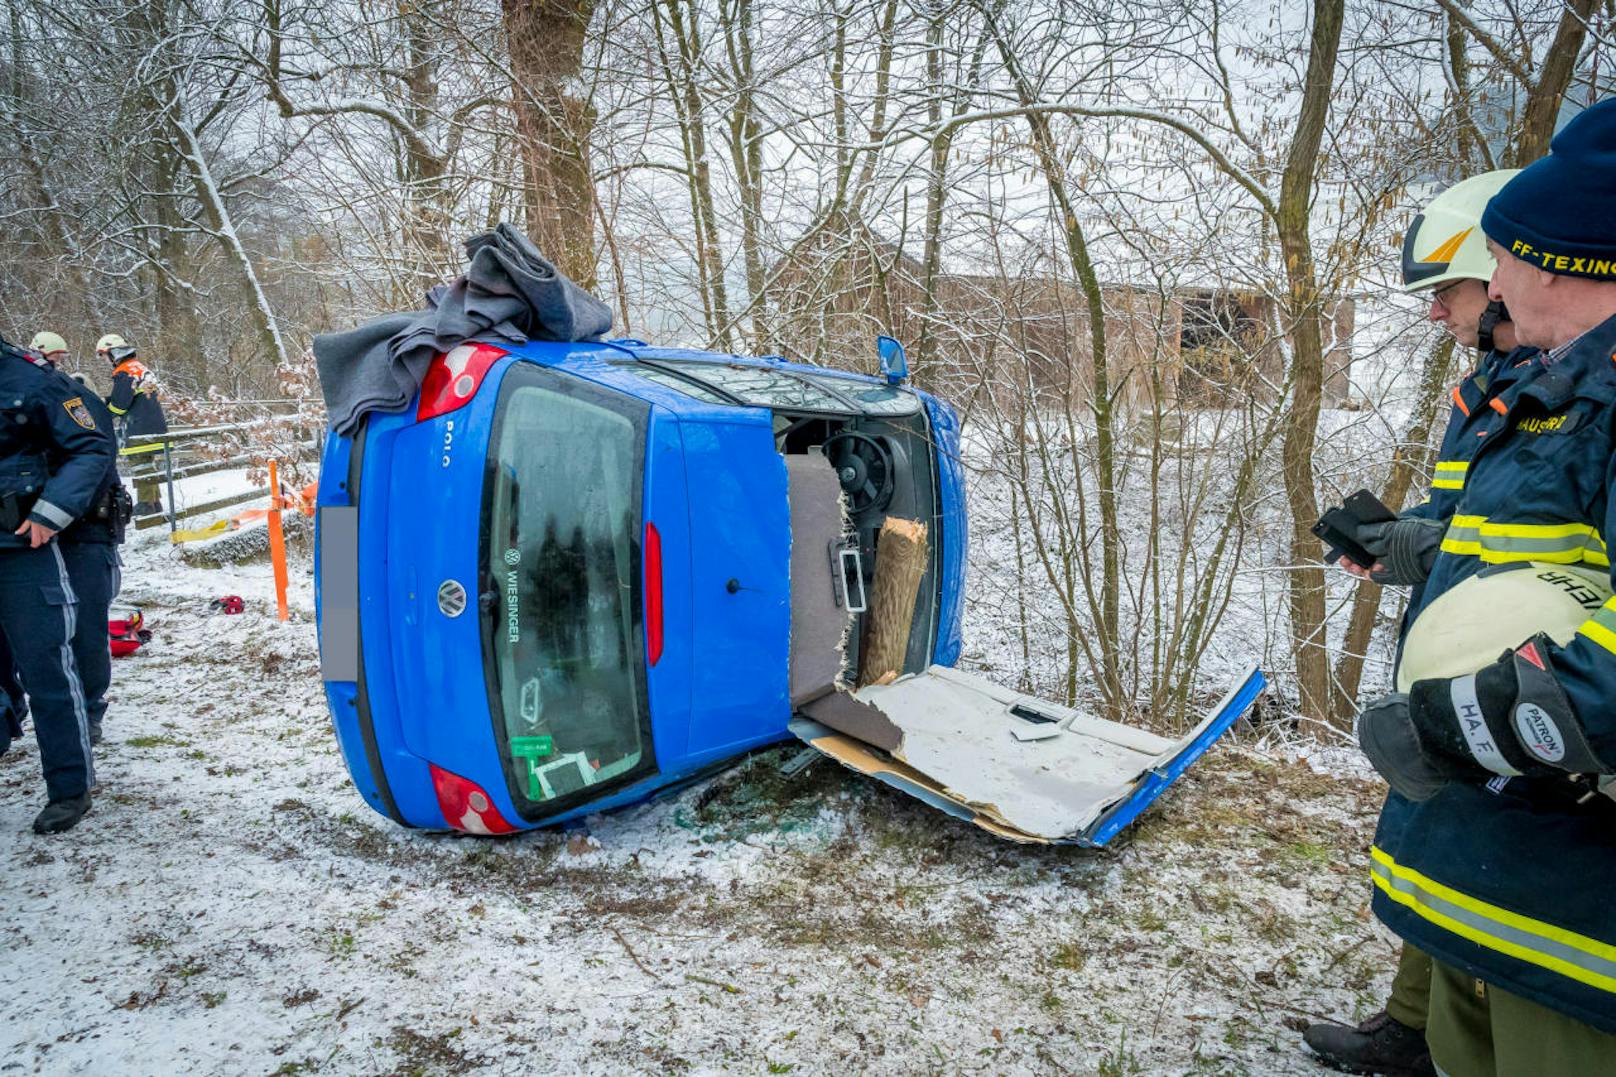 Tragödie am Mittwoch bei Texing (Bezirk Melk): Ein Pkw-Lenker knallte auf der Schneefahrbahn gegen einen Mast. Er starb, die Beifahrerin wurde verletzt.